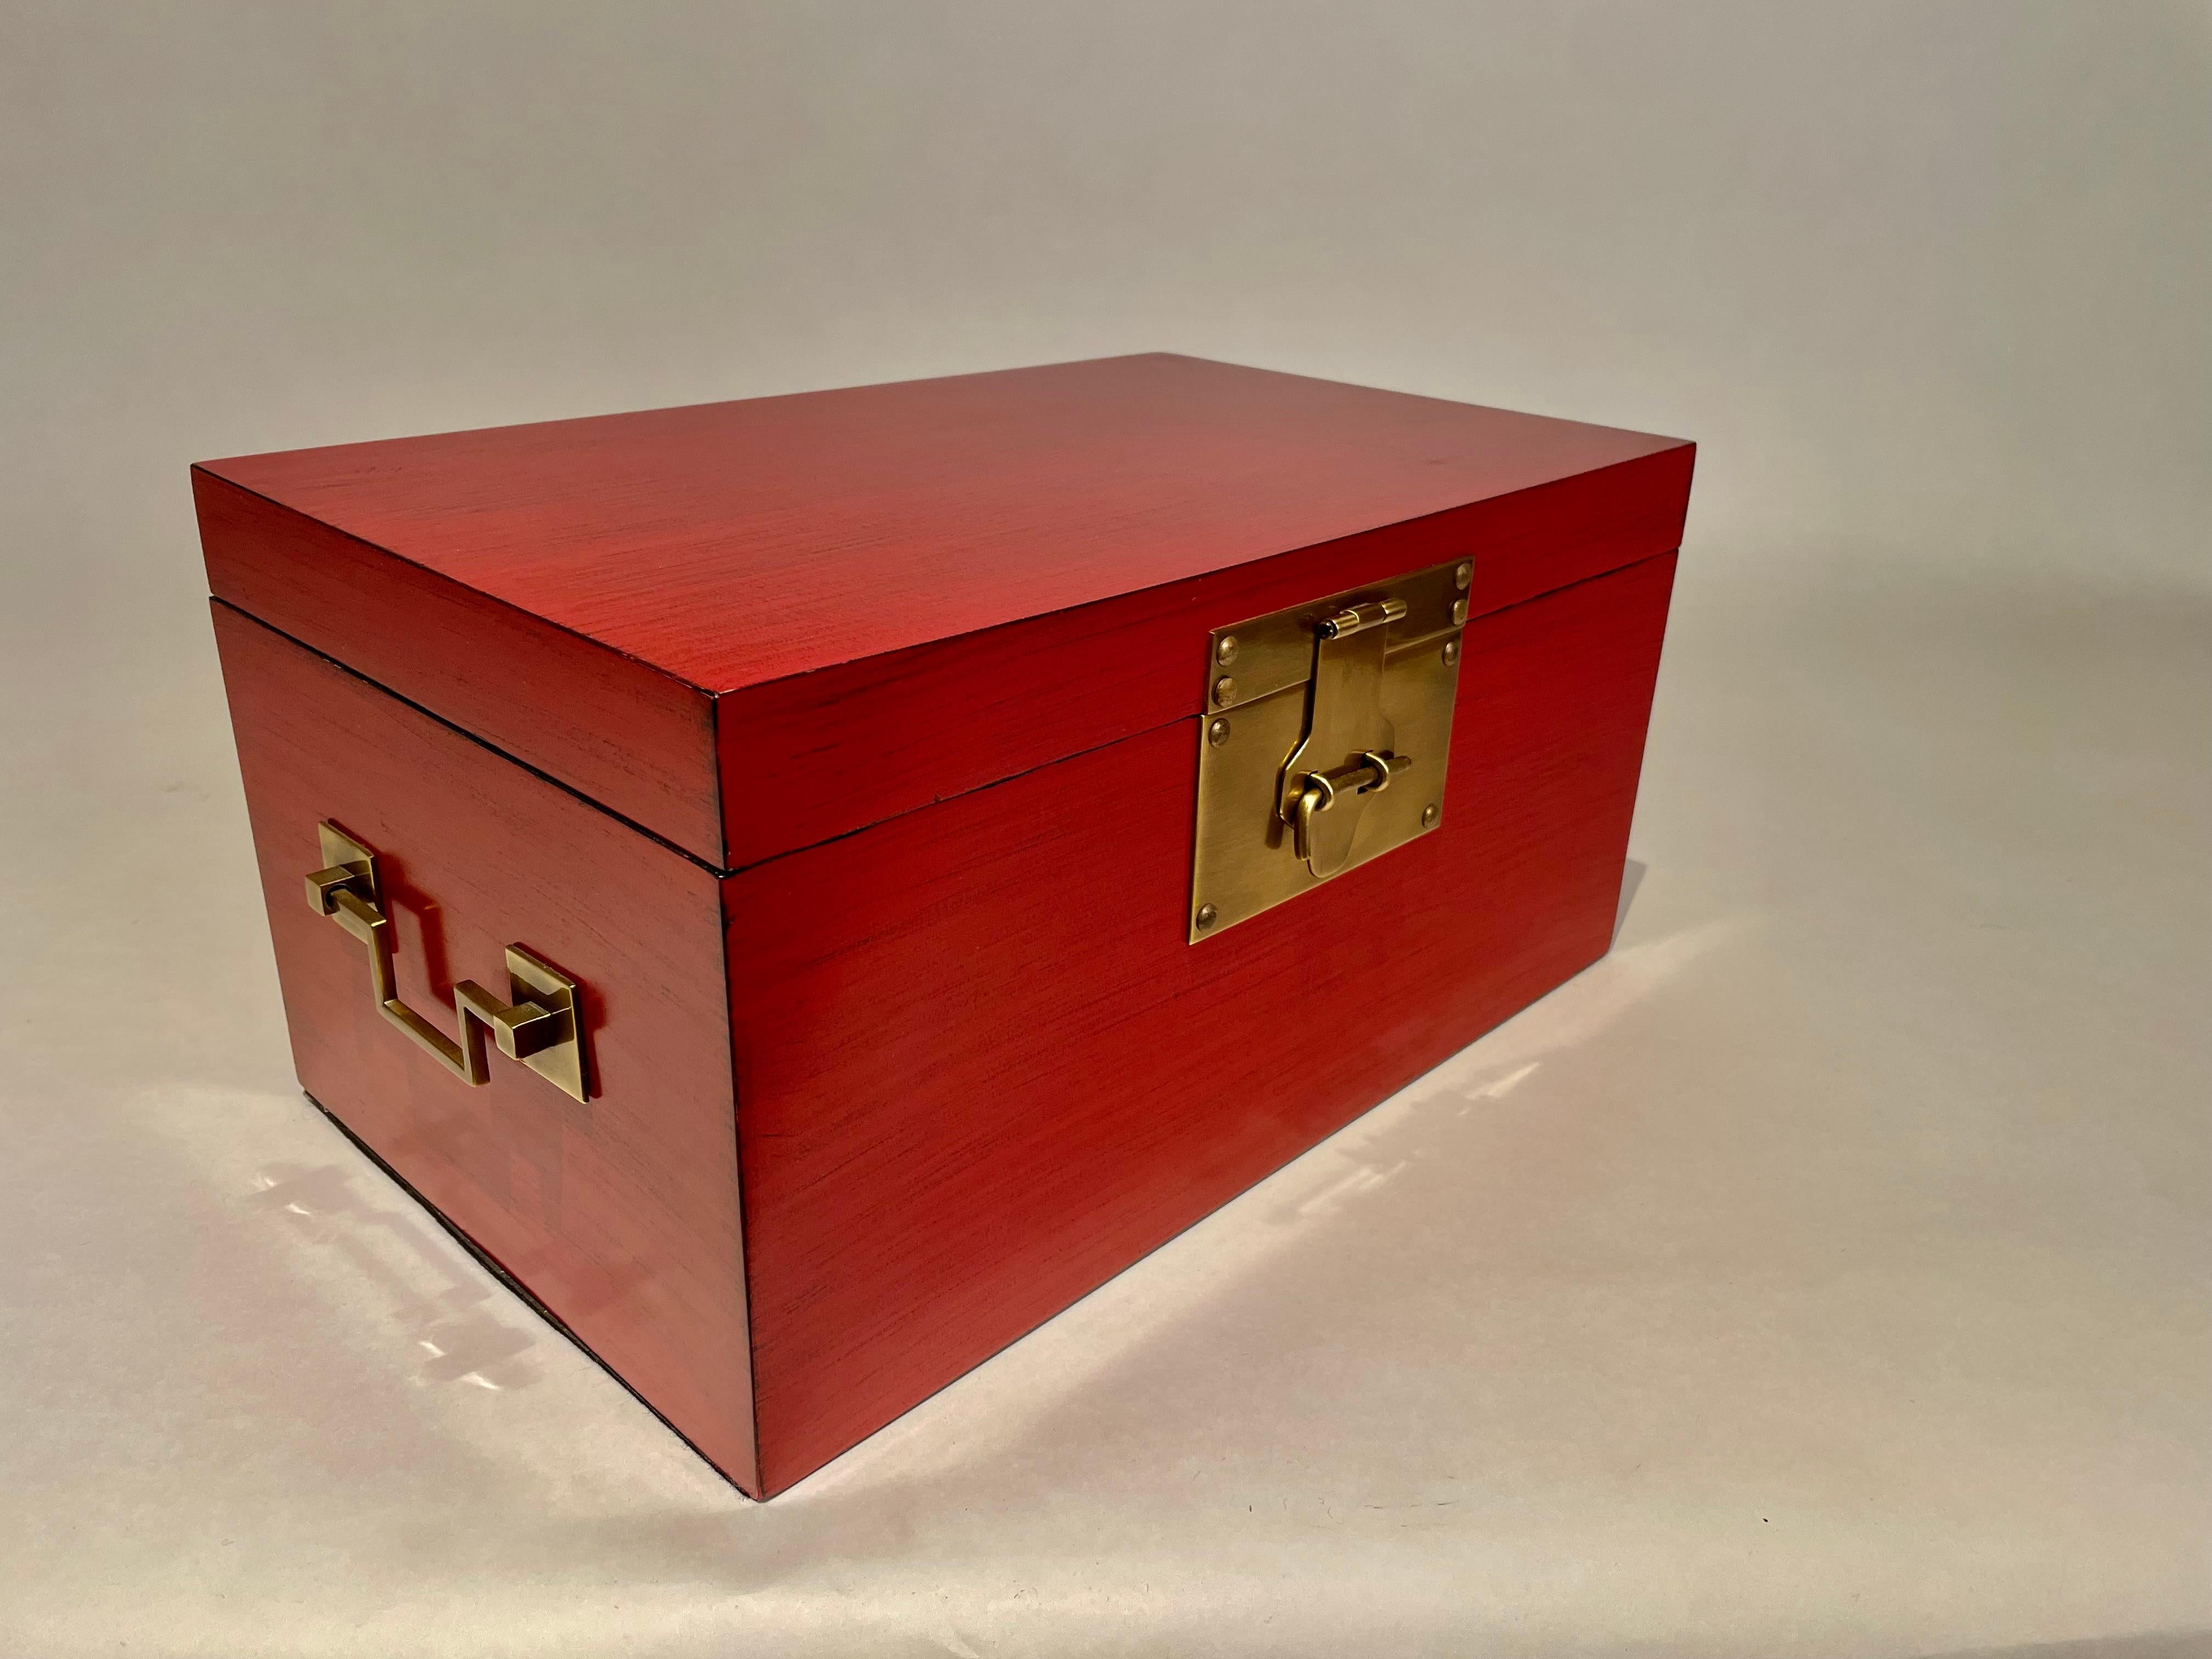 Boîte chinoise laquée rouge et noir avec de fines montures en laiton dans le style de l'exportation chinoise. Jolie couleur. Une boîte décorative raffinée et classique, de belle facture. 
16 pouces de large, 10 de profondeur, 8 de hauteur
Nous avons